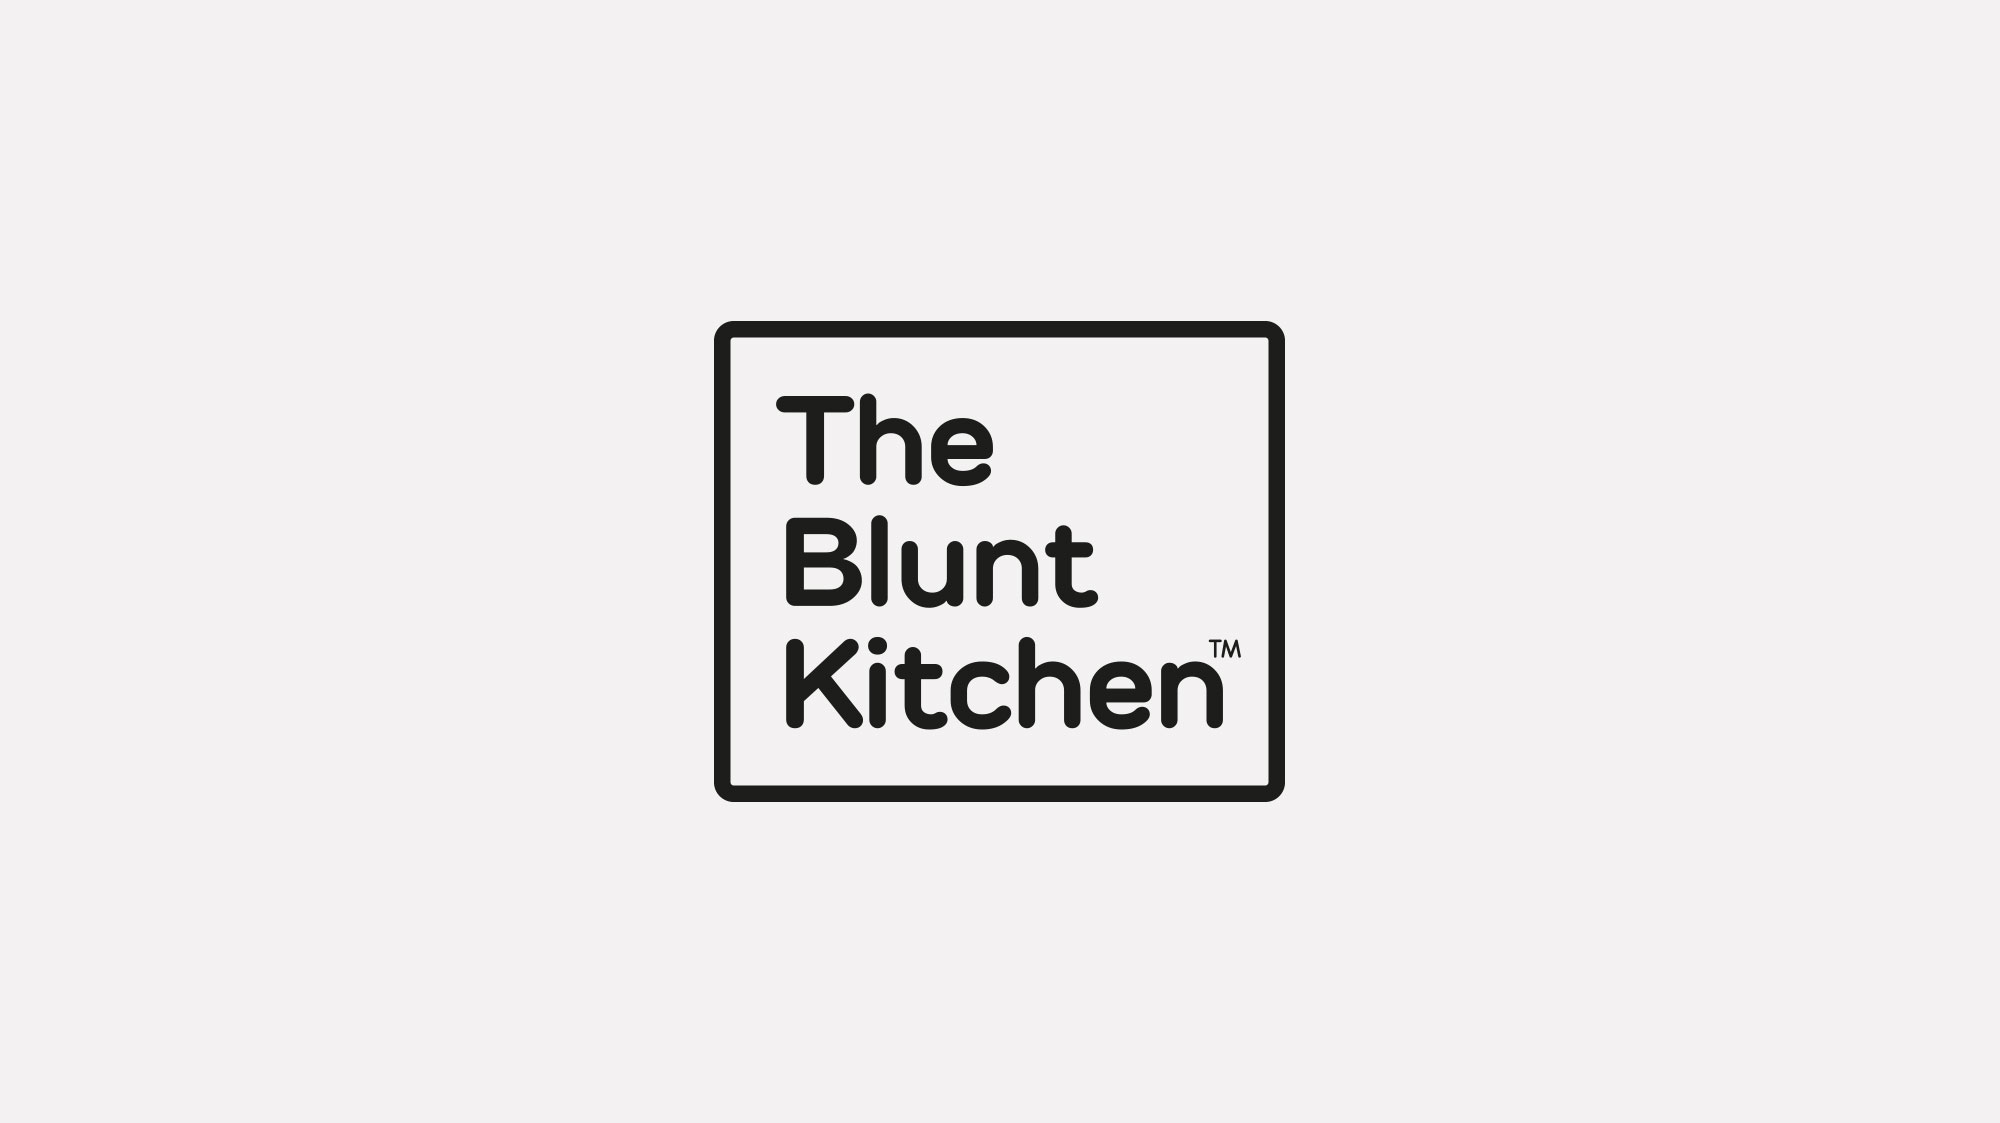 The Blunt Kitchen